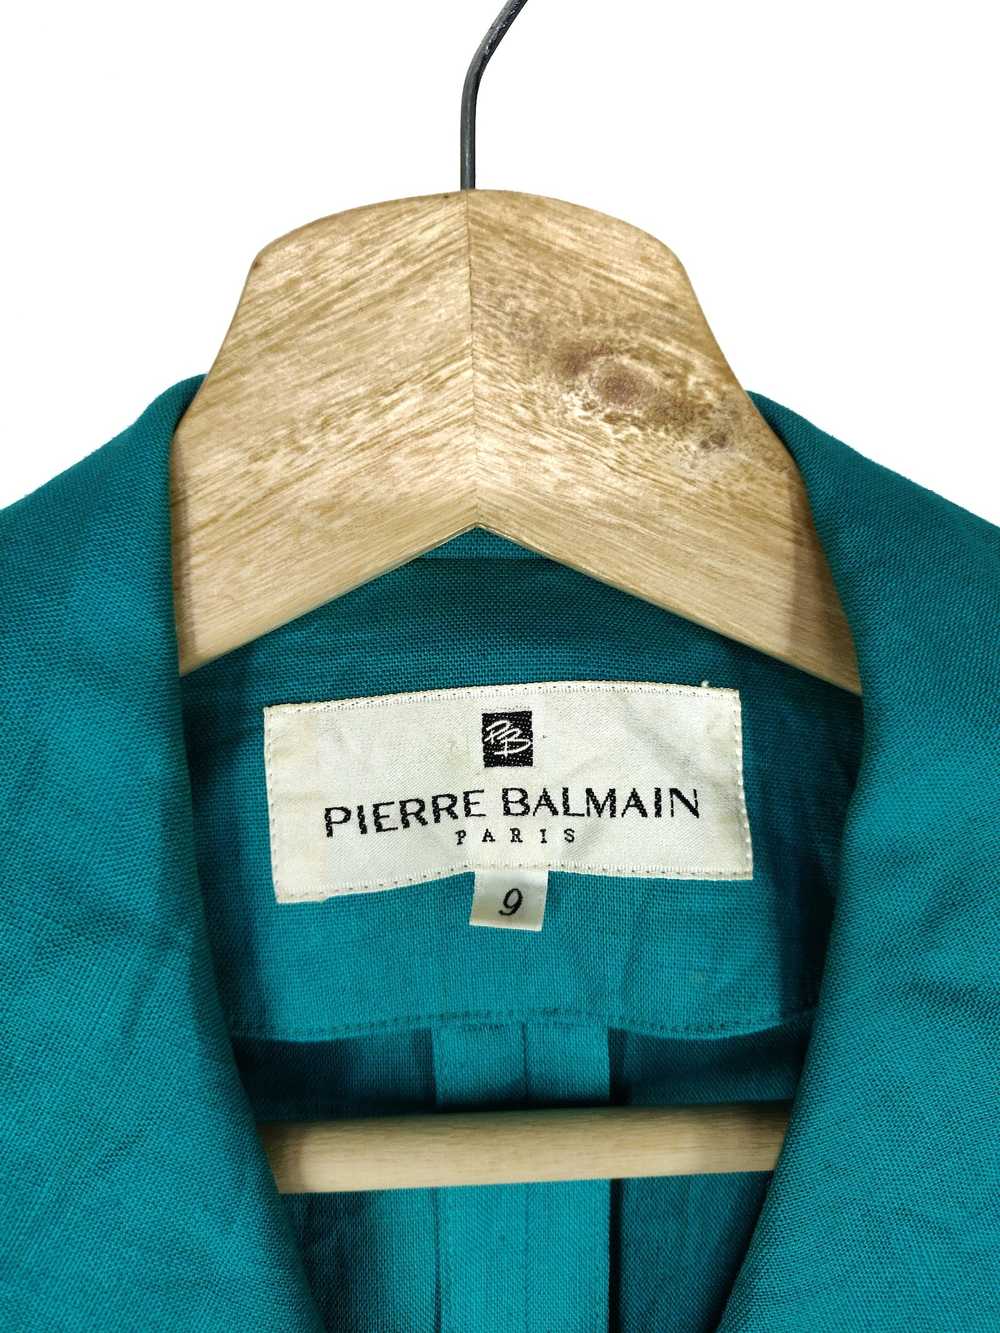 Balmain × Pierre Balmain × Vintage Pierre Balmain… - image 7